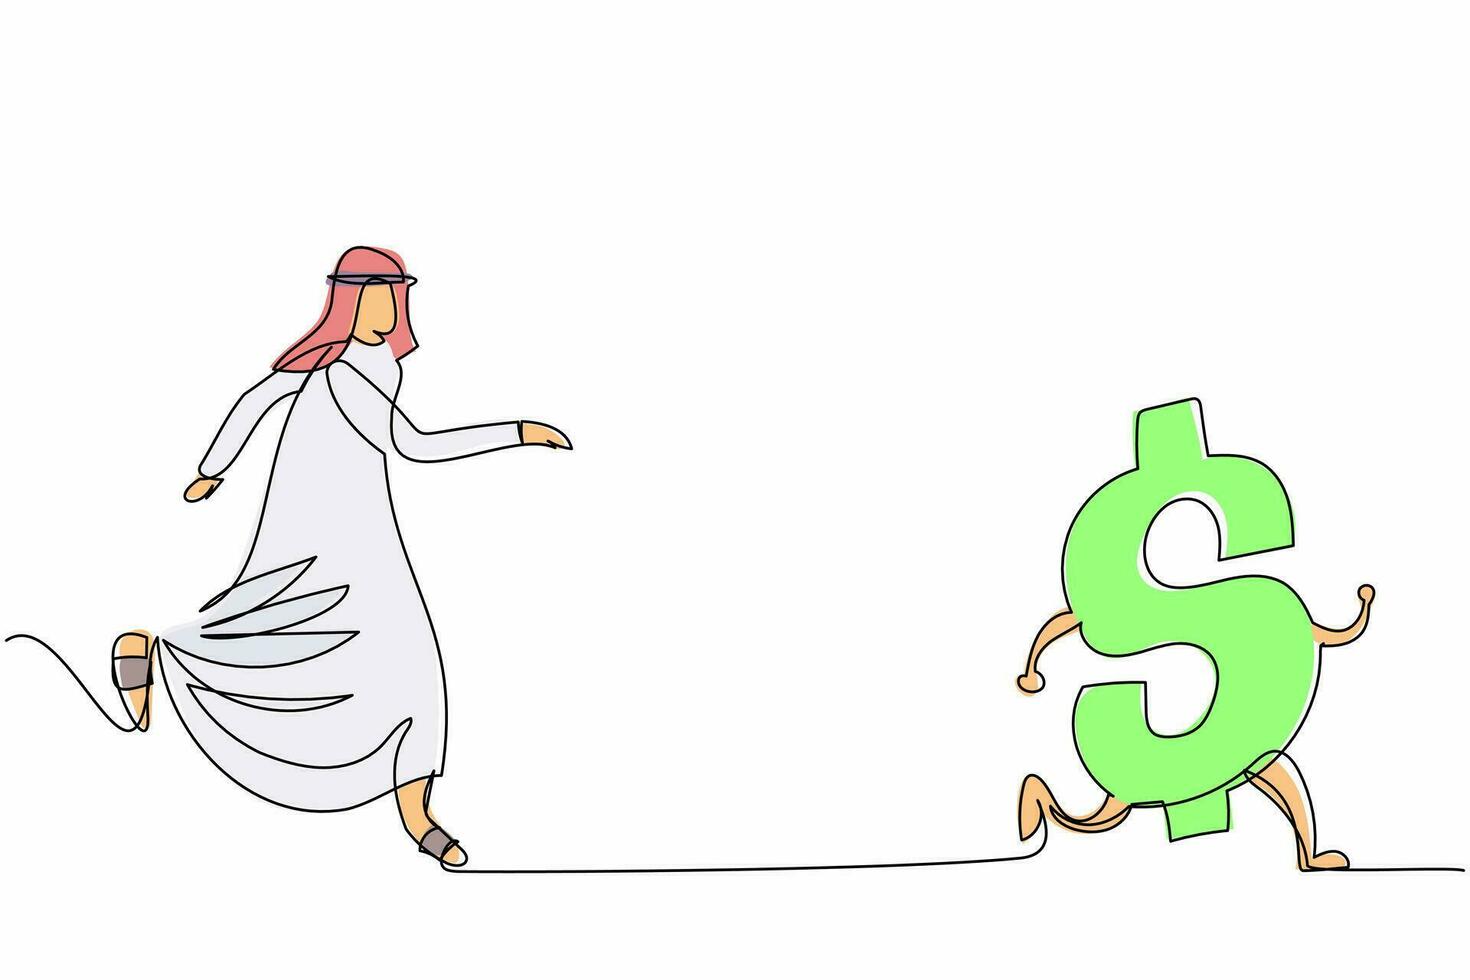 hombre de negocios árabe de dibujo de una sola línea persiguiendo el símbolo del dólar. búsqueda del éxito, riqueza, libertad financiera, rico, inversión. metáfora empresarial. ilustración de vector gráfico de diseño de línea continua